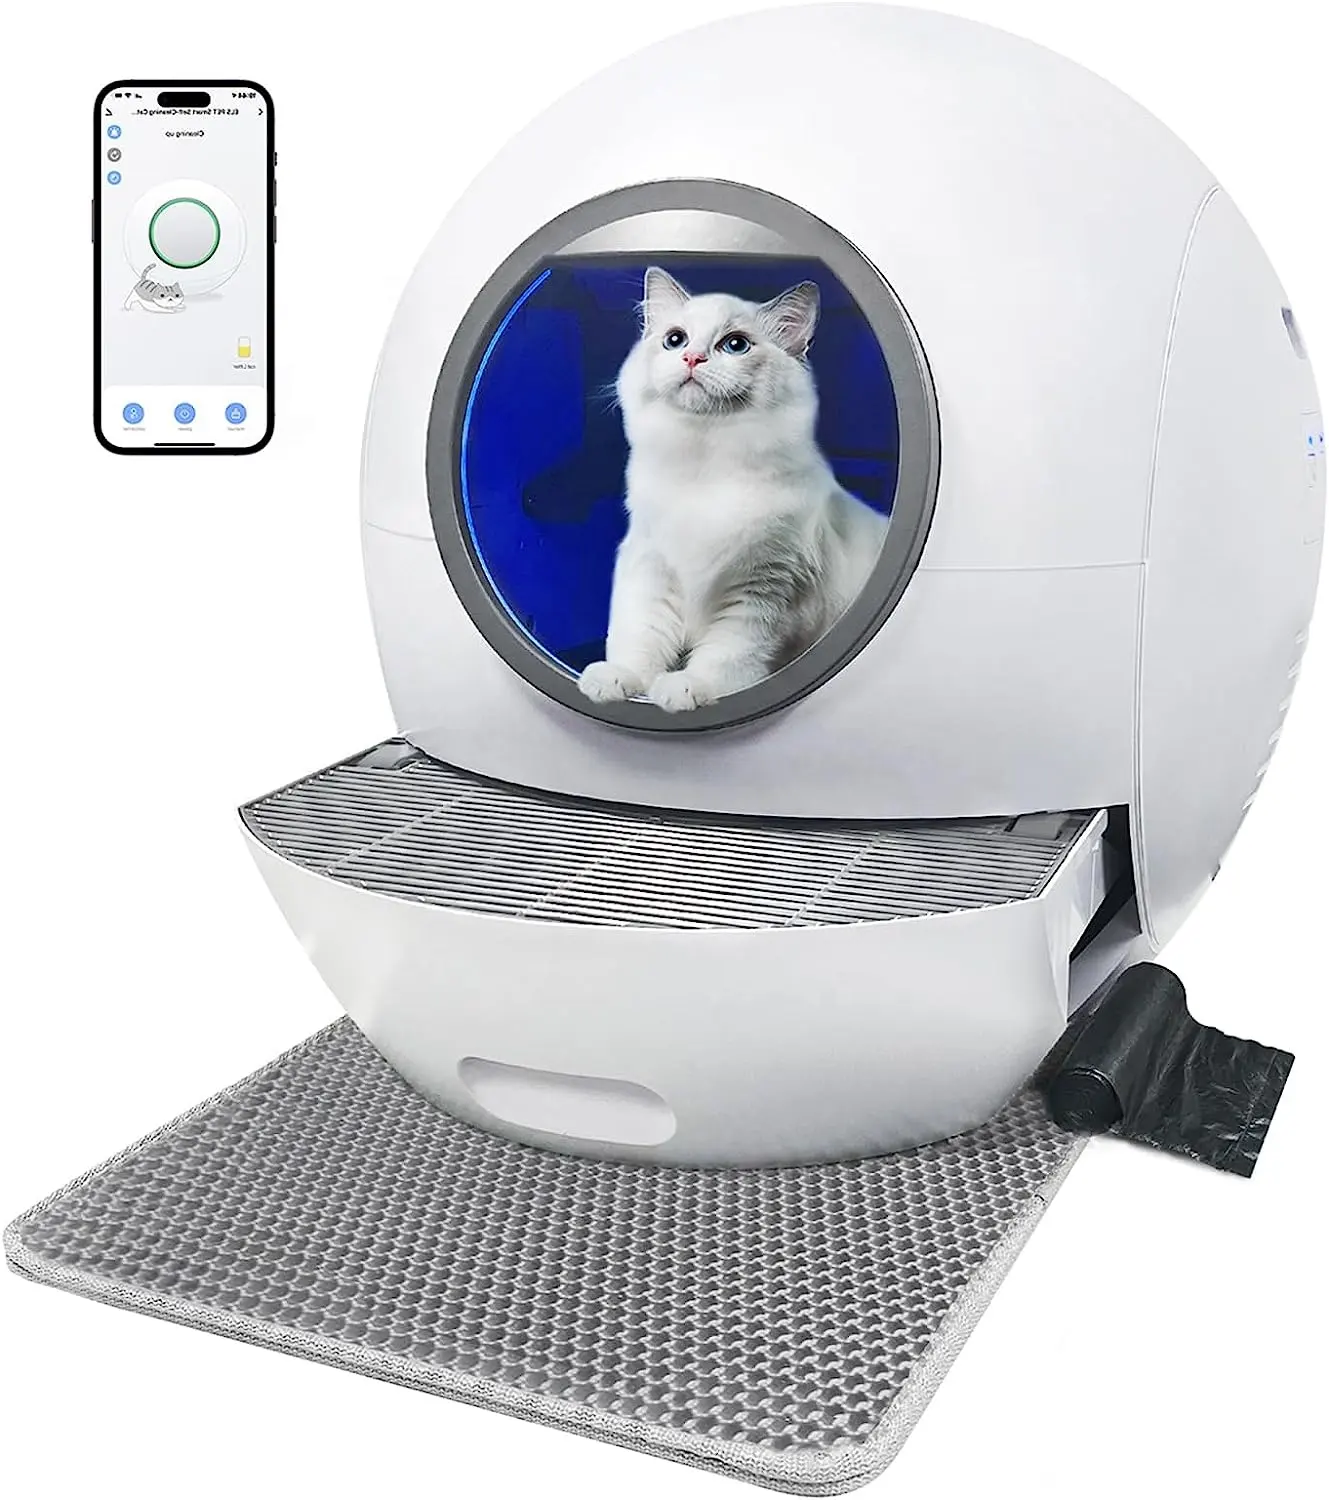 صندوق كبير أوتوماتيكي لتثبيت فضلات القطط بسعر منخفض من المصنع، صندوق فضلات ذاتي التنظيف الذكي التلقائي لقطط أثاث المرحاض